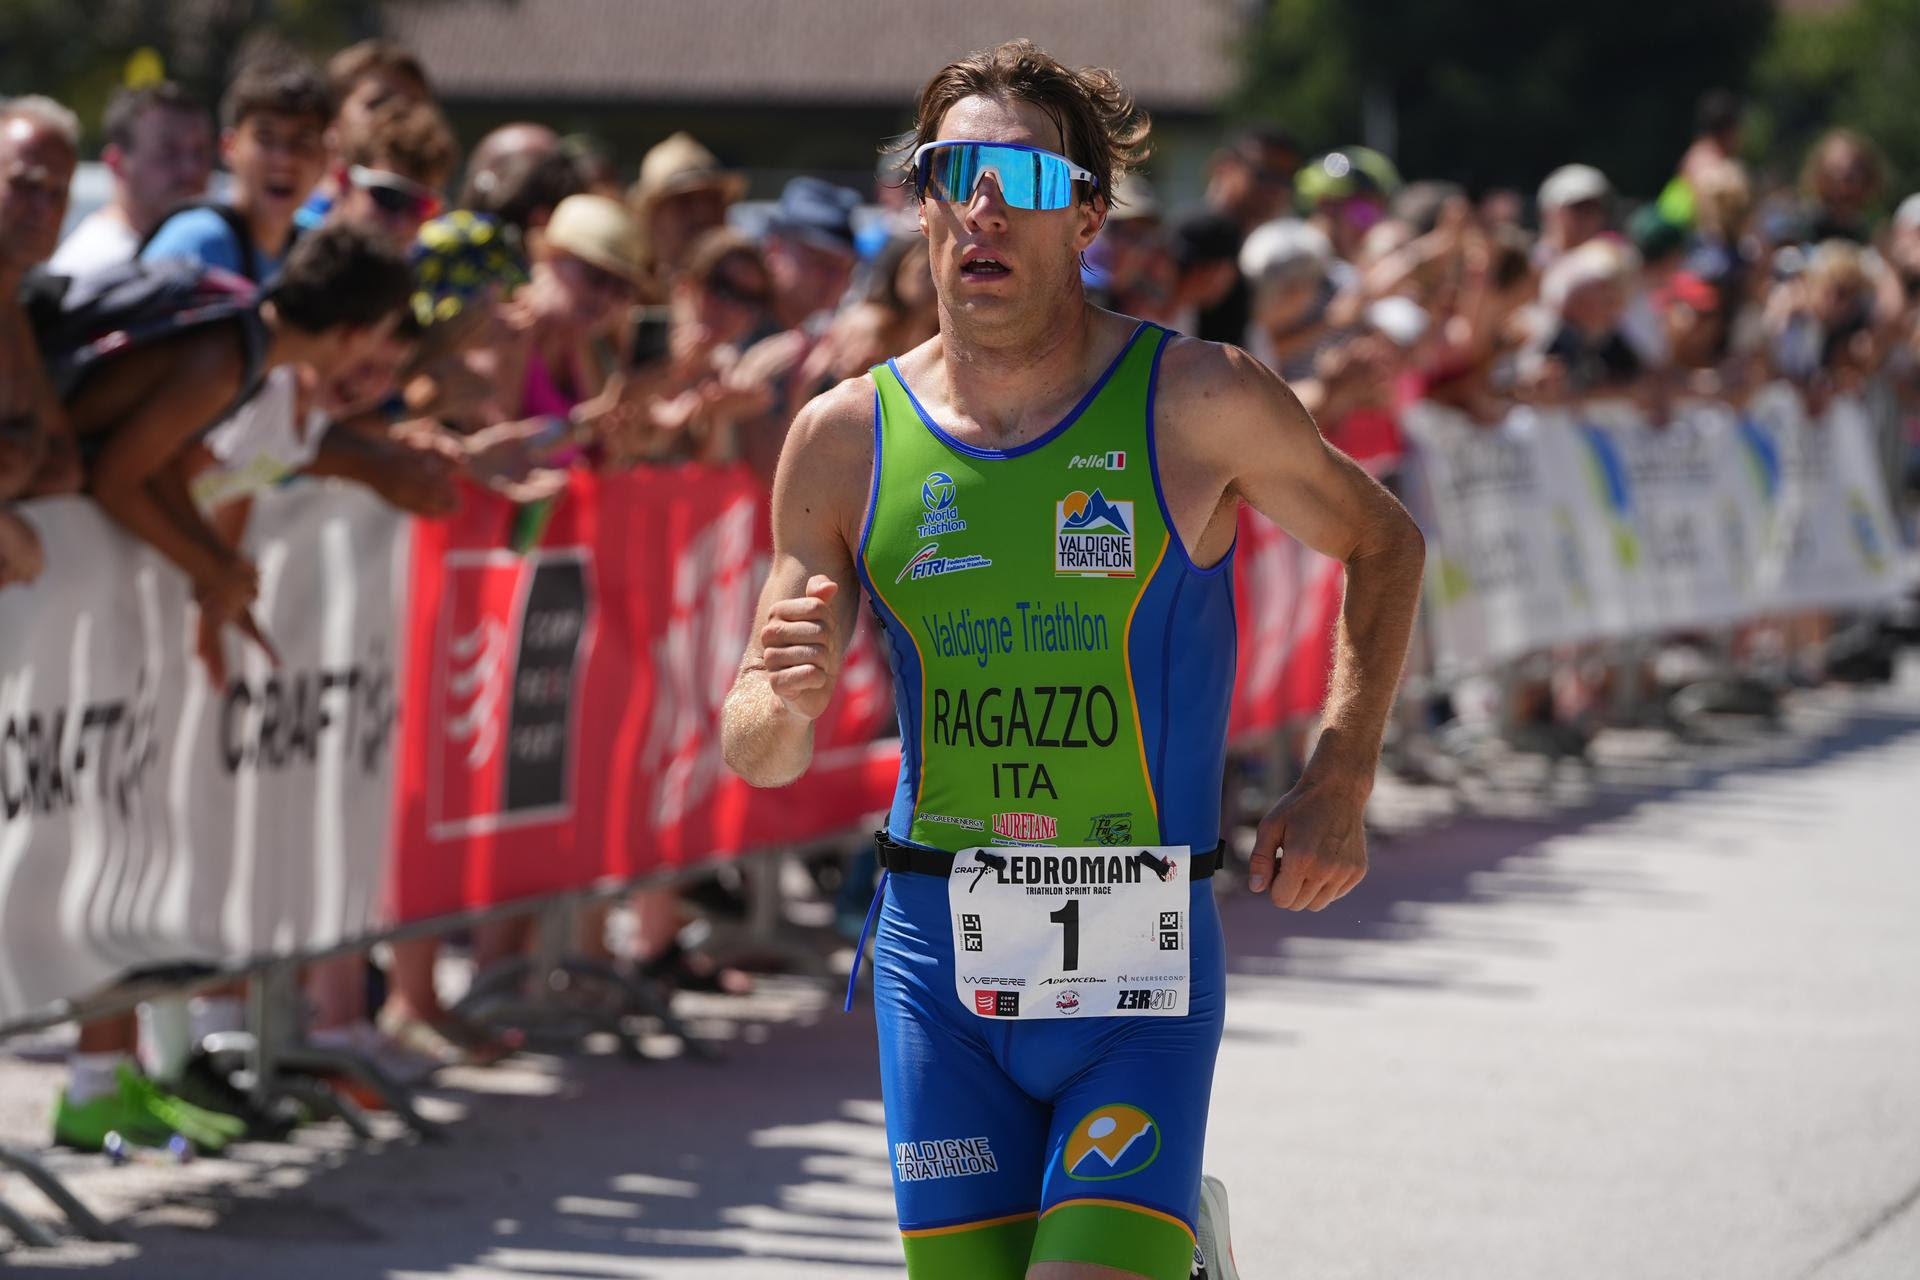 Ledroman Triathlon a mille, oro a Nicolò Ragazzo e Chiara Lobba